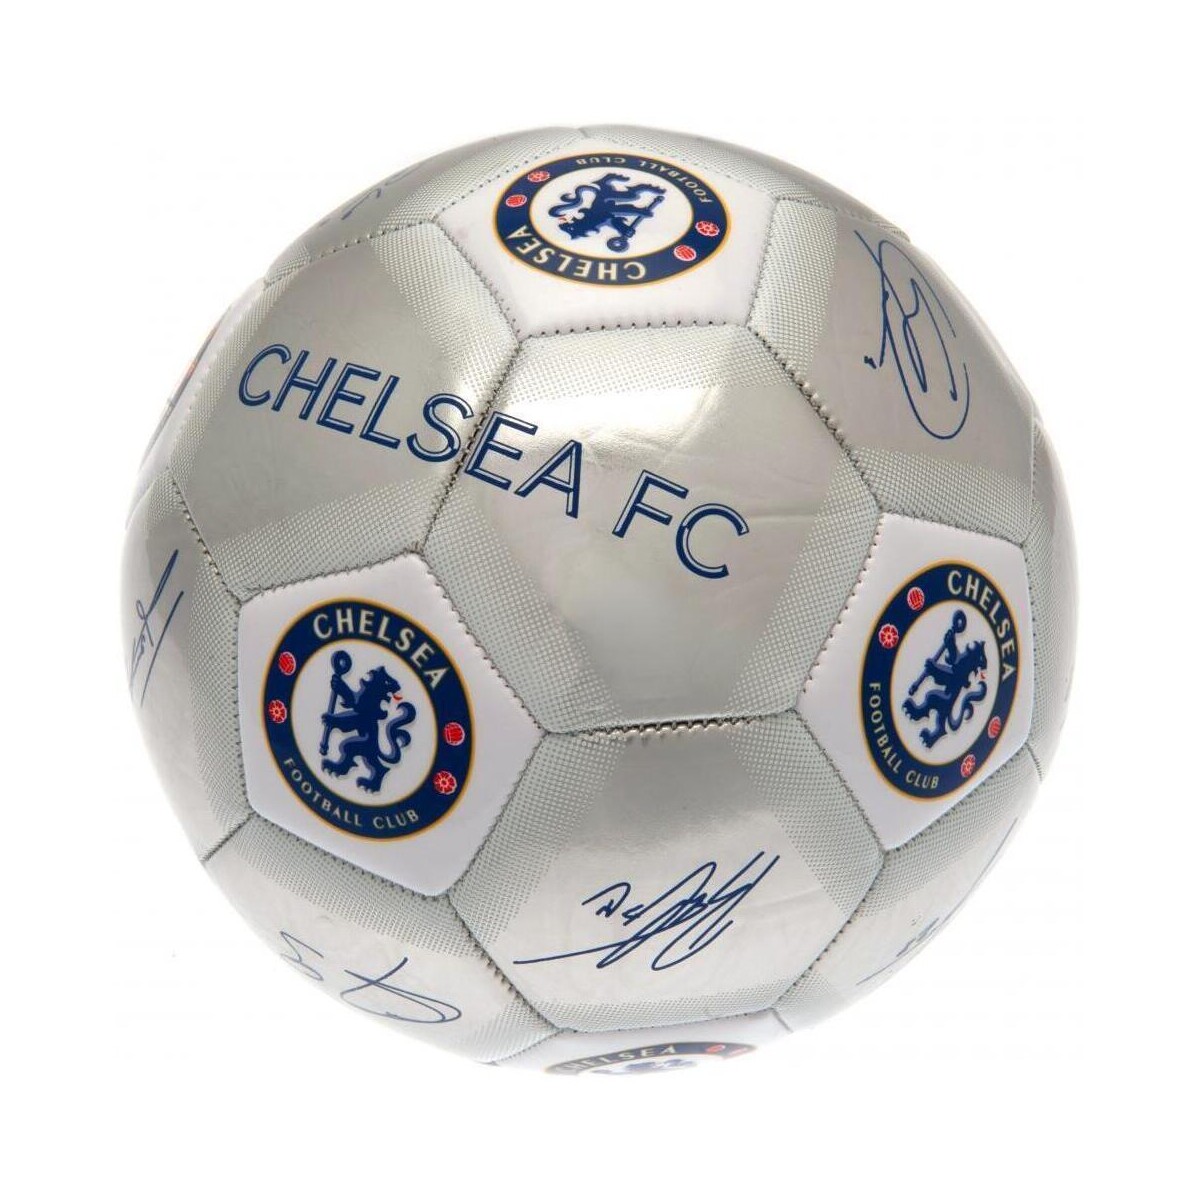 Accesorios Complemento para deporte Chelsea Fc Signature Multicolor